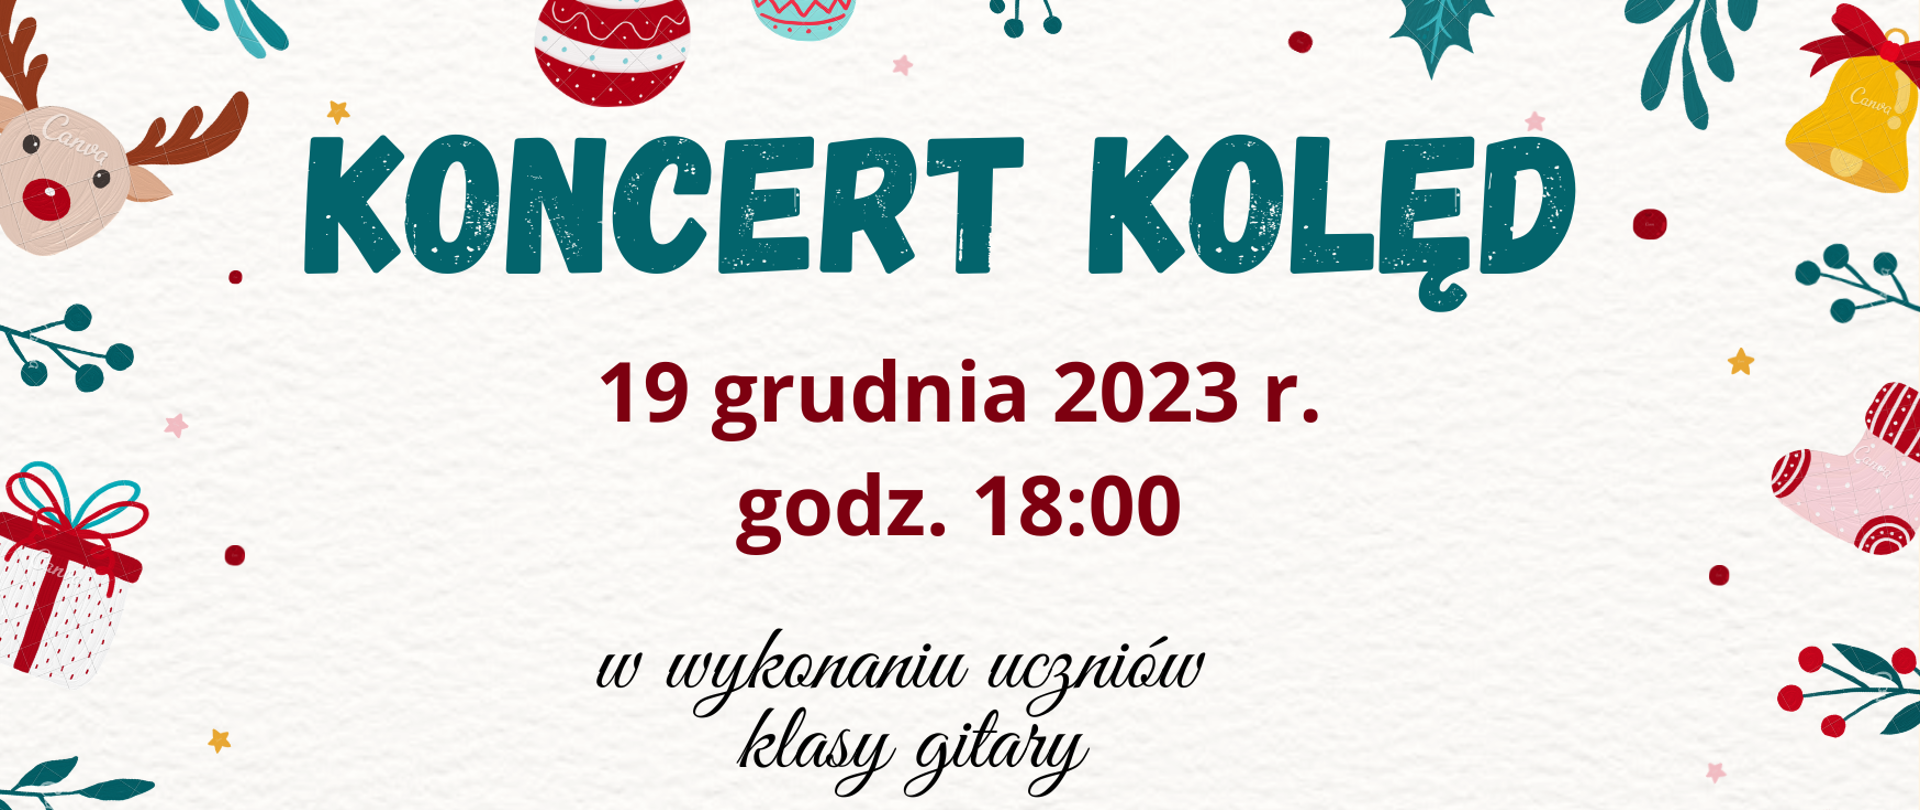 Koncert kolęd B. Kurdybacha 19.12.2023 r. 